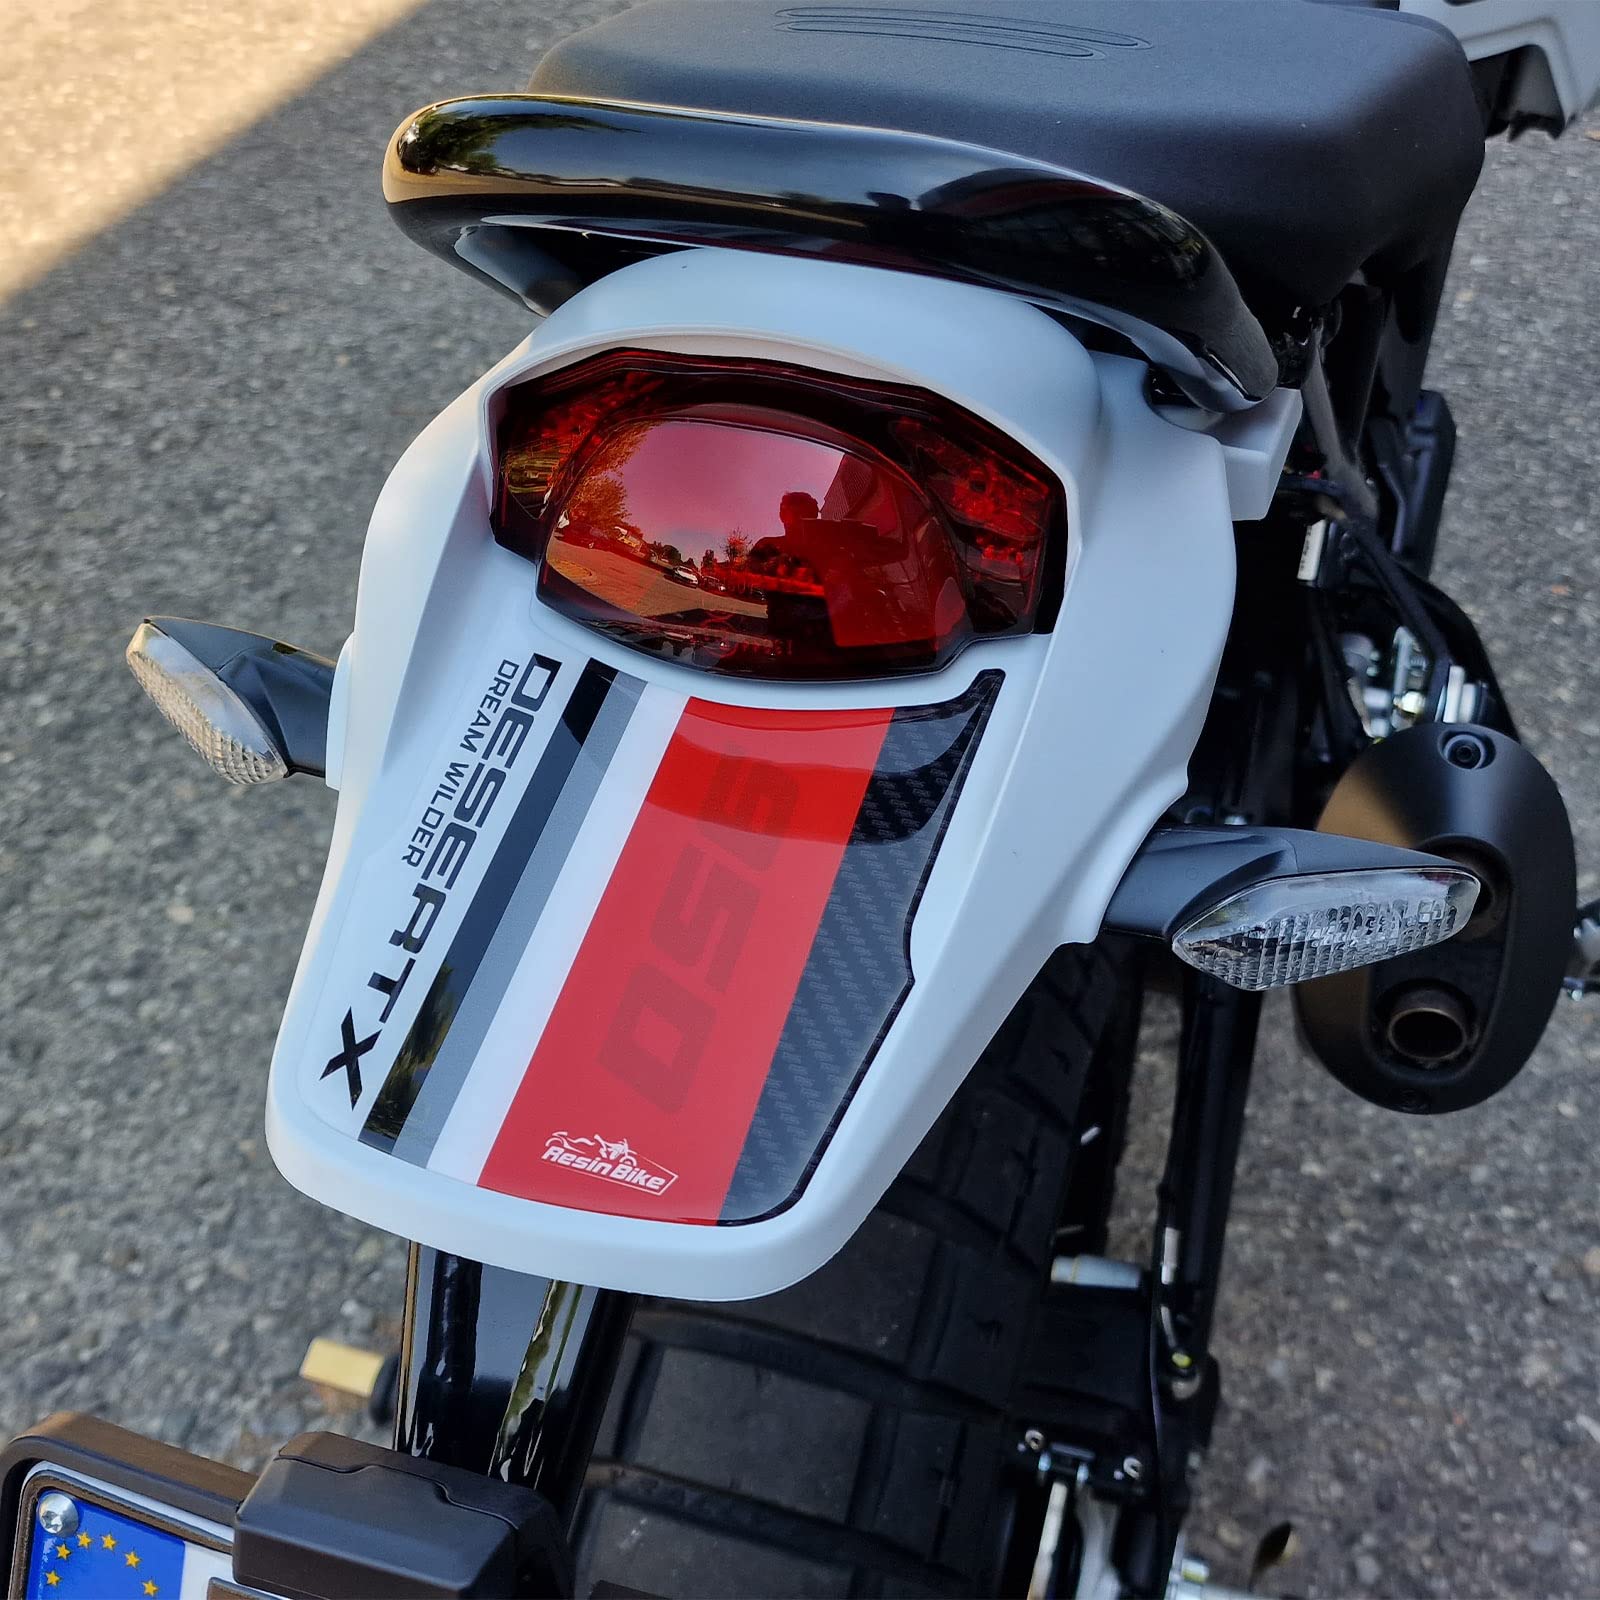 Resin Bike Aufkleber für Motorrad Kompatibel mit Ducati DesertX 2022. Heckschutz vor Stößen und Kratzern. 3D-Harzklebstoff. Motorrad-Gadget – Stickers - Made in Italy von Resin Bike